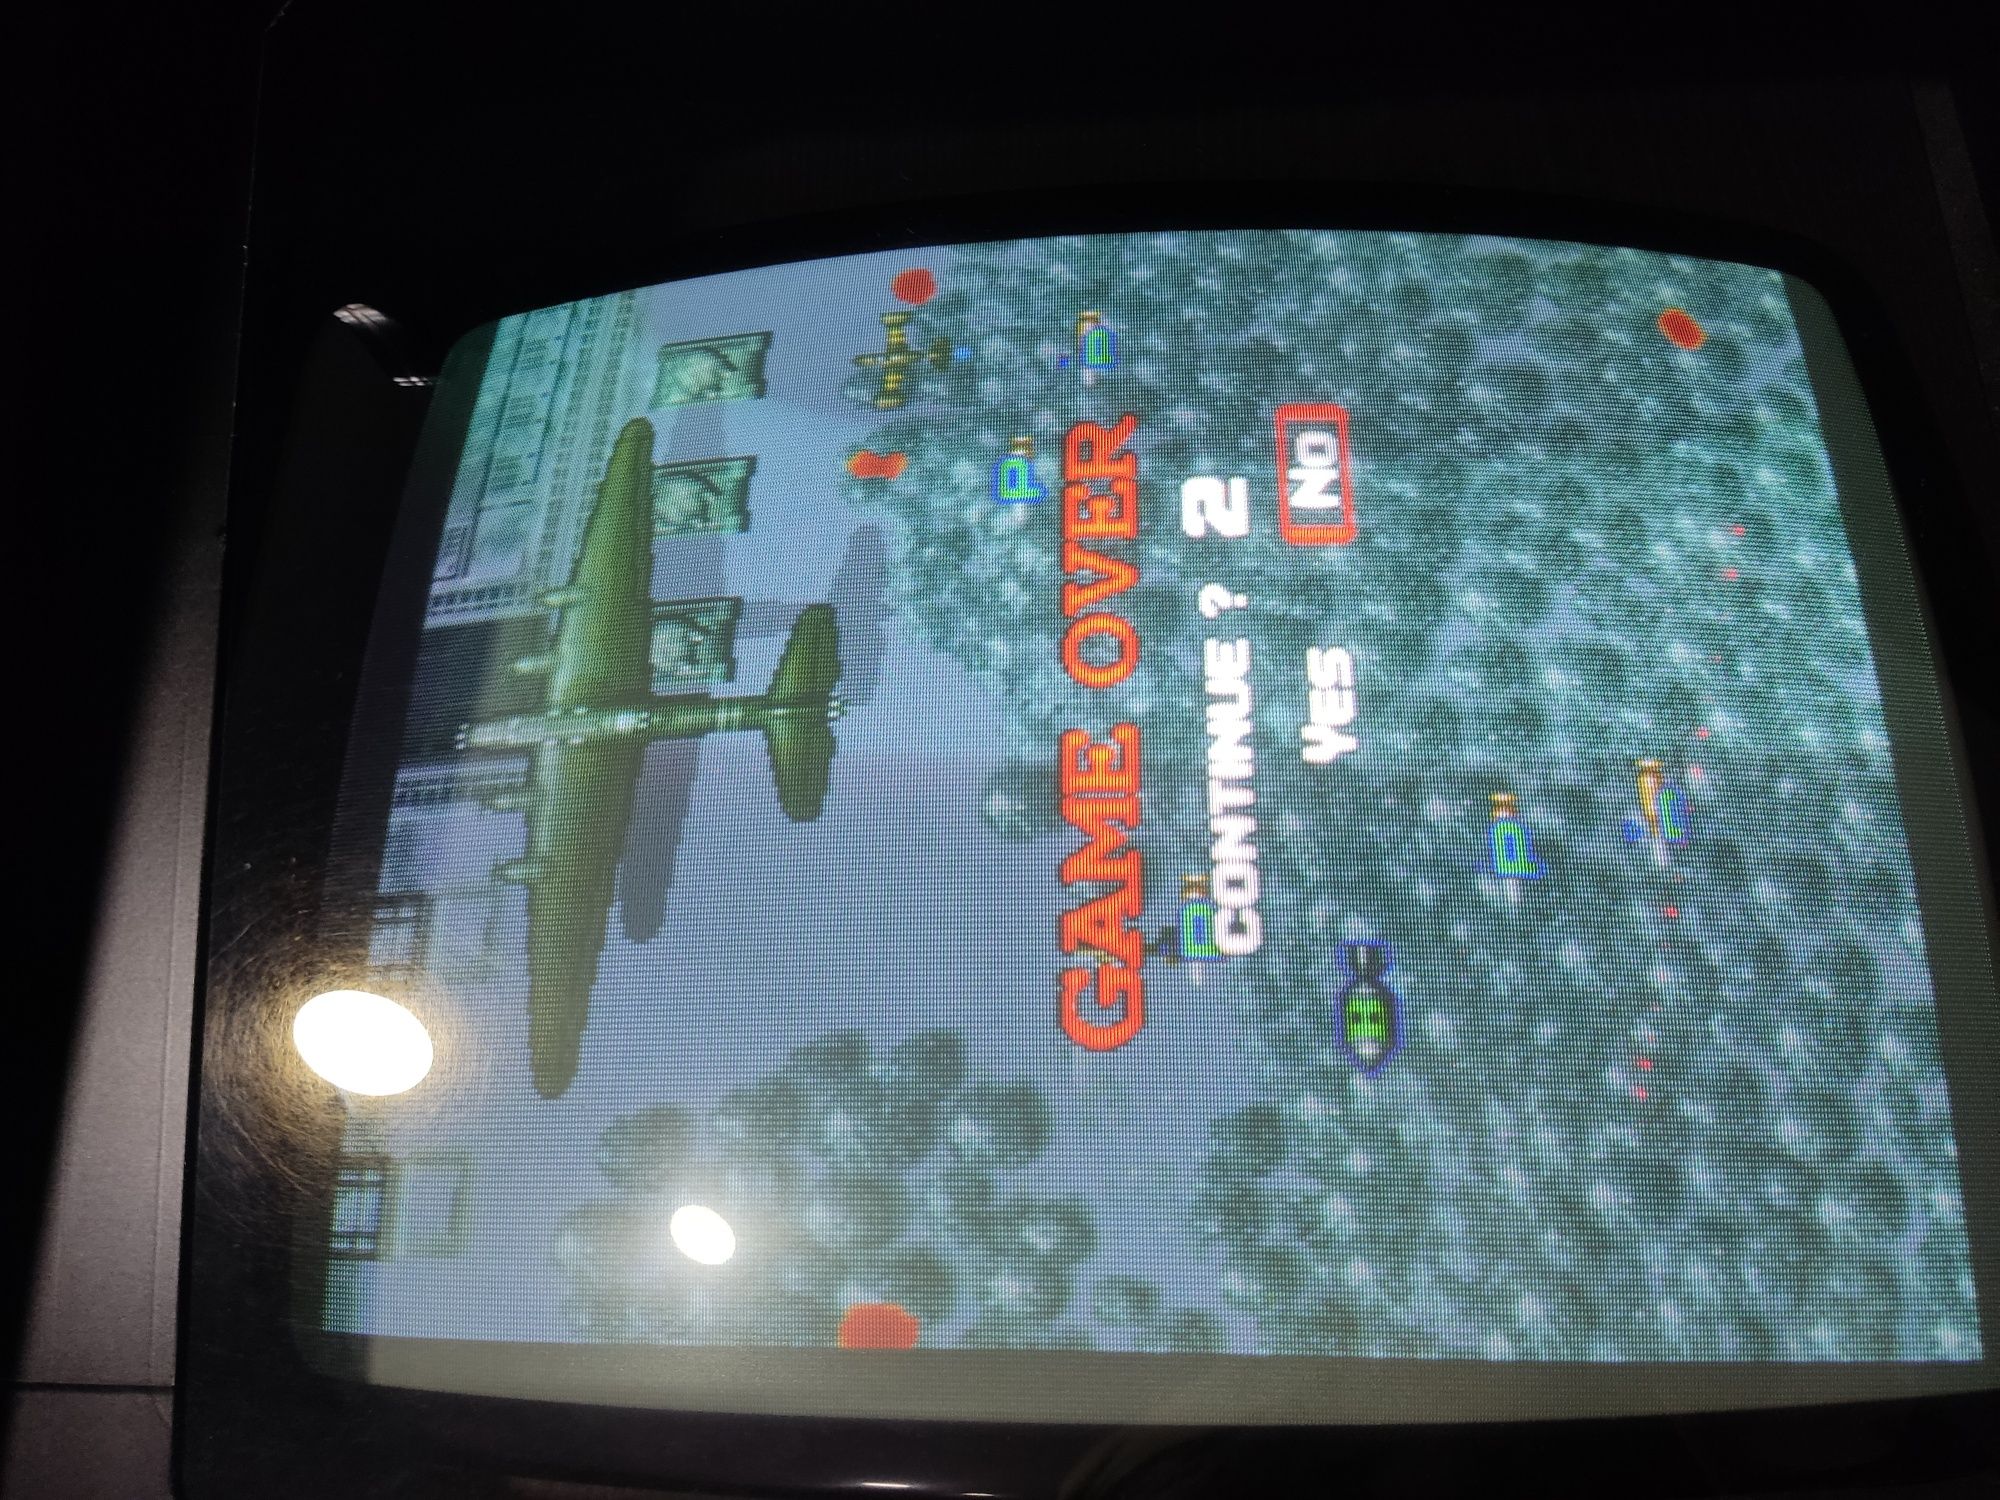 PCB arcade 1945 Fight Plane